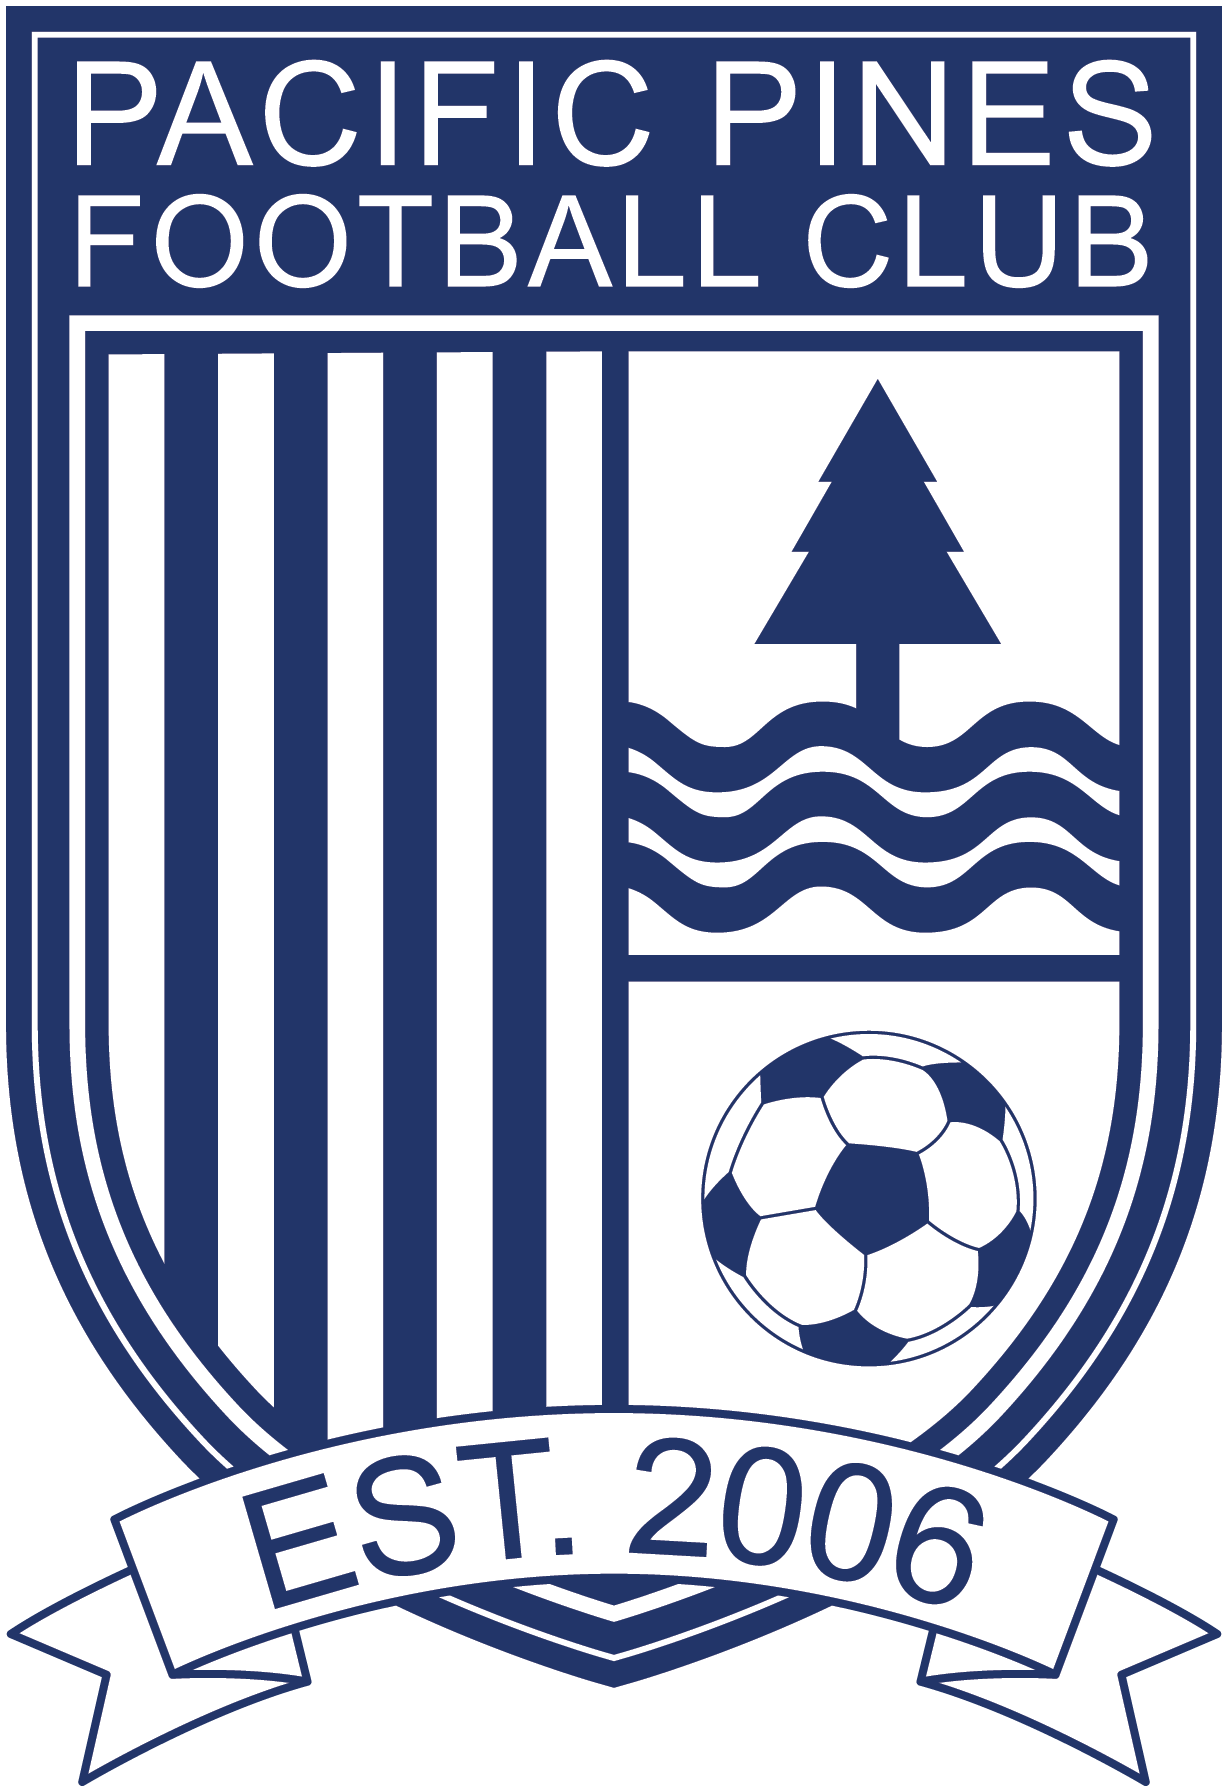 Pacific pines football club logo.